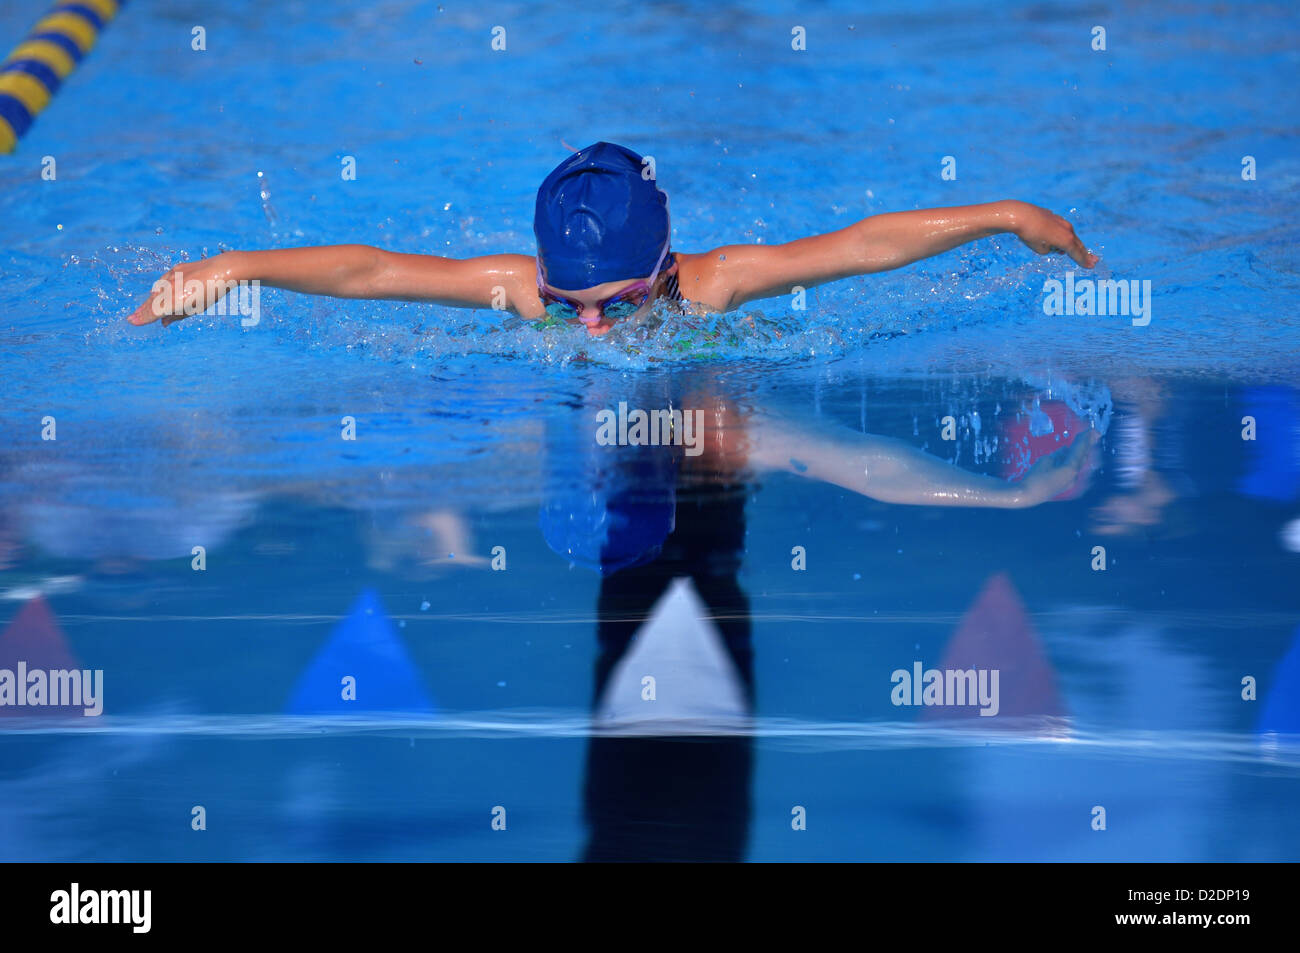 Giovani nuotatore nuoto la farfalla in acqua blu che si riflette sull'acqua. Foto Stock